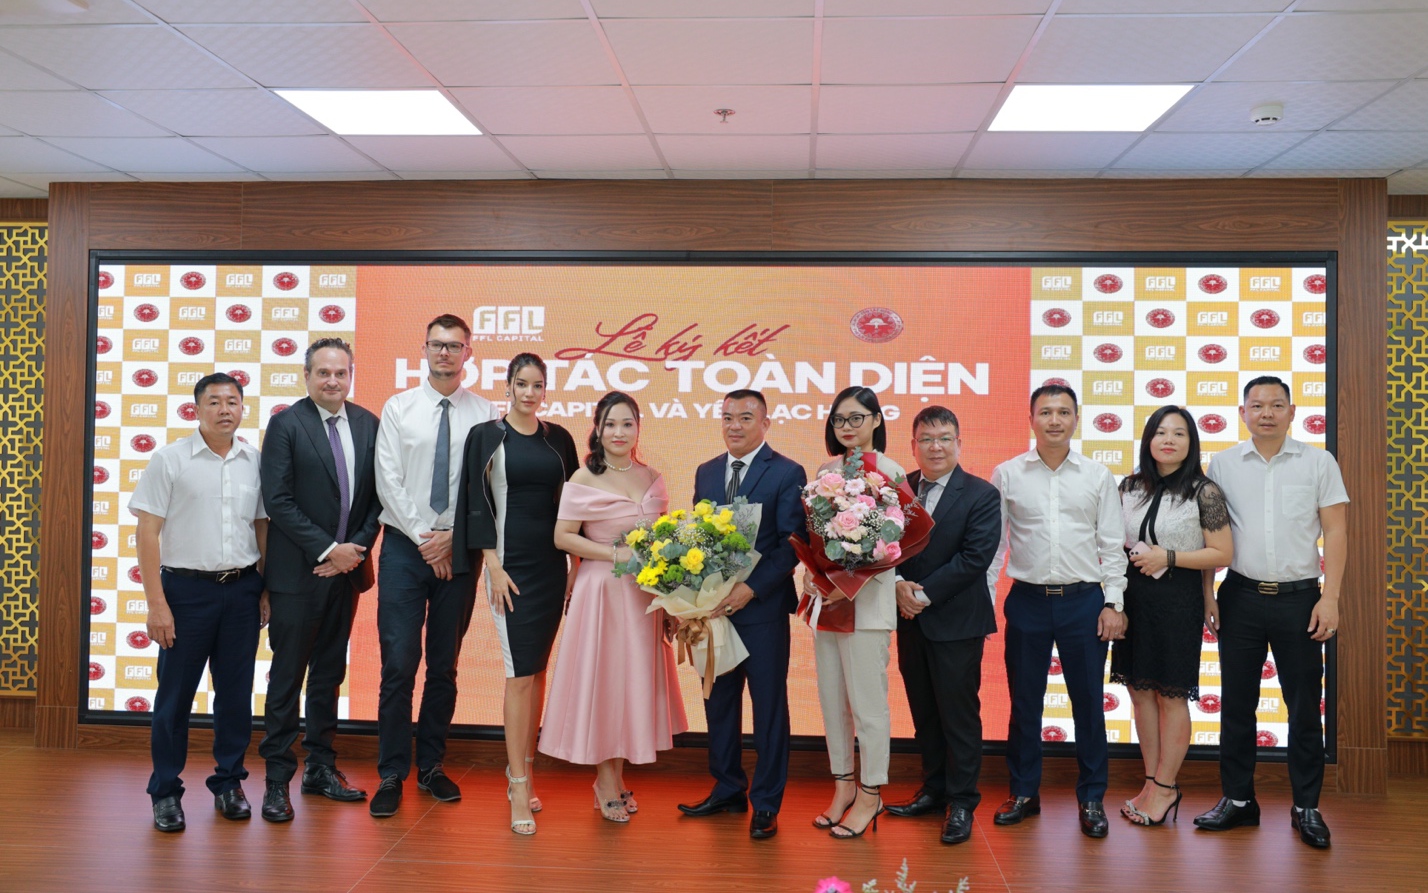 FFL Capital và Yến Lạc Hồng ký kết thỏa thuận hợp tác toàn diện